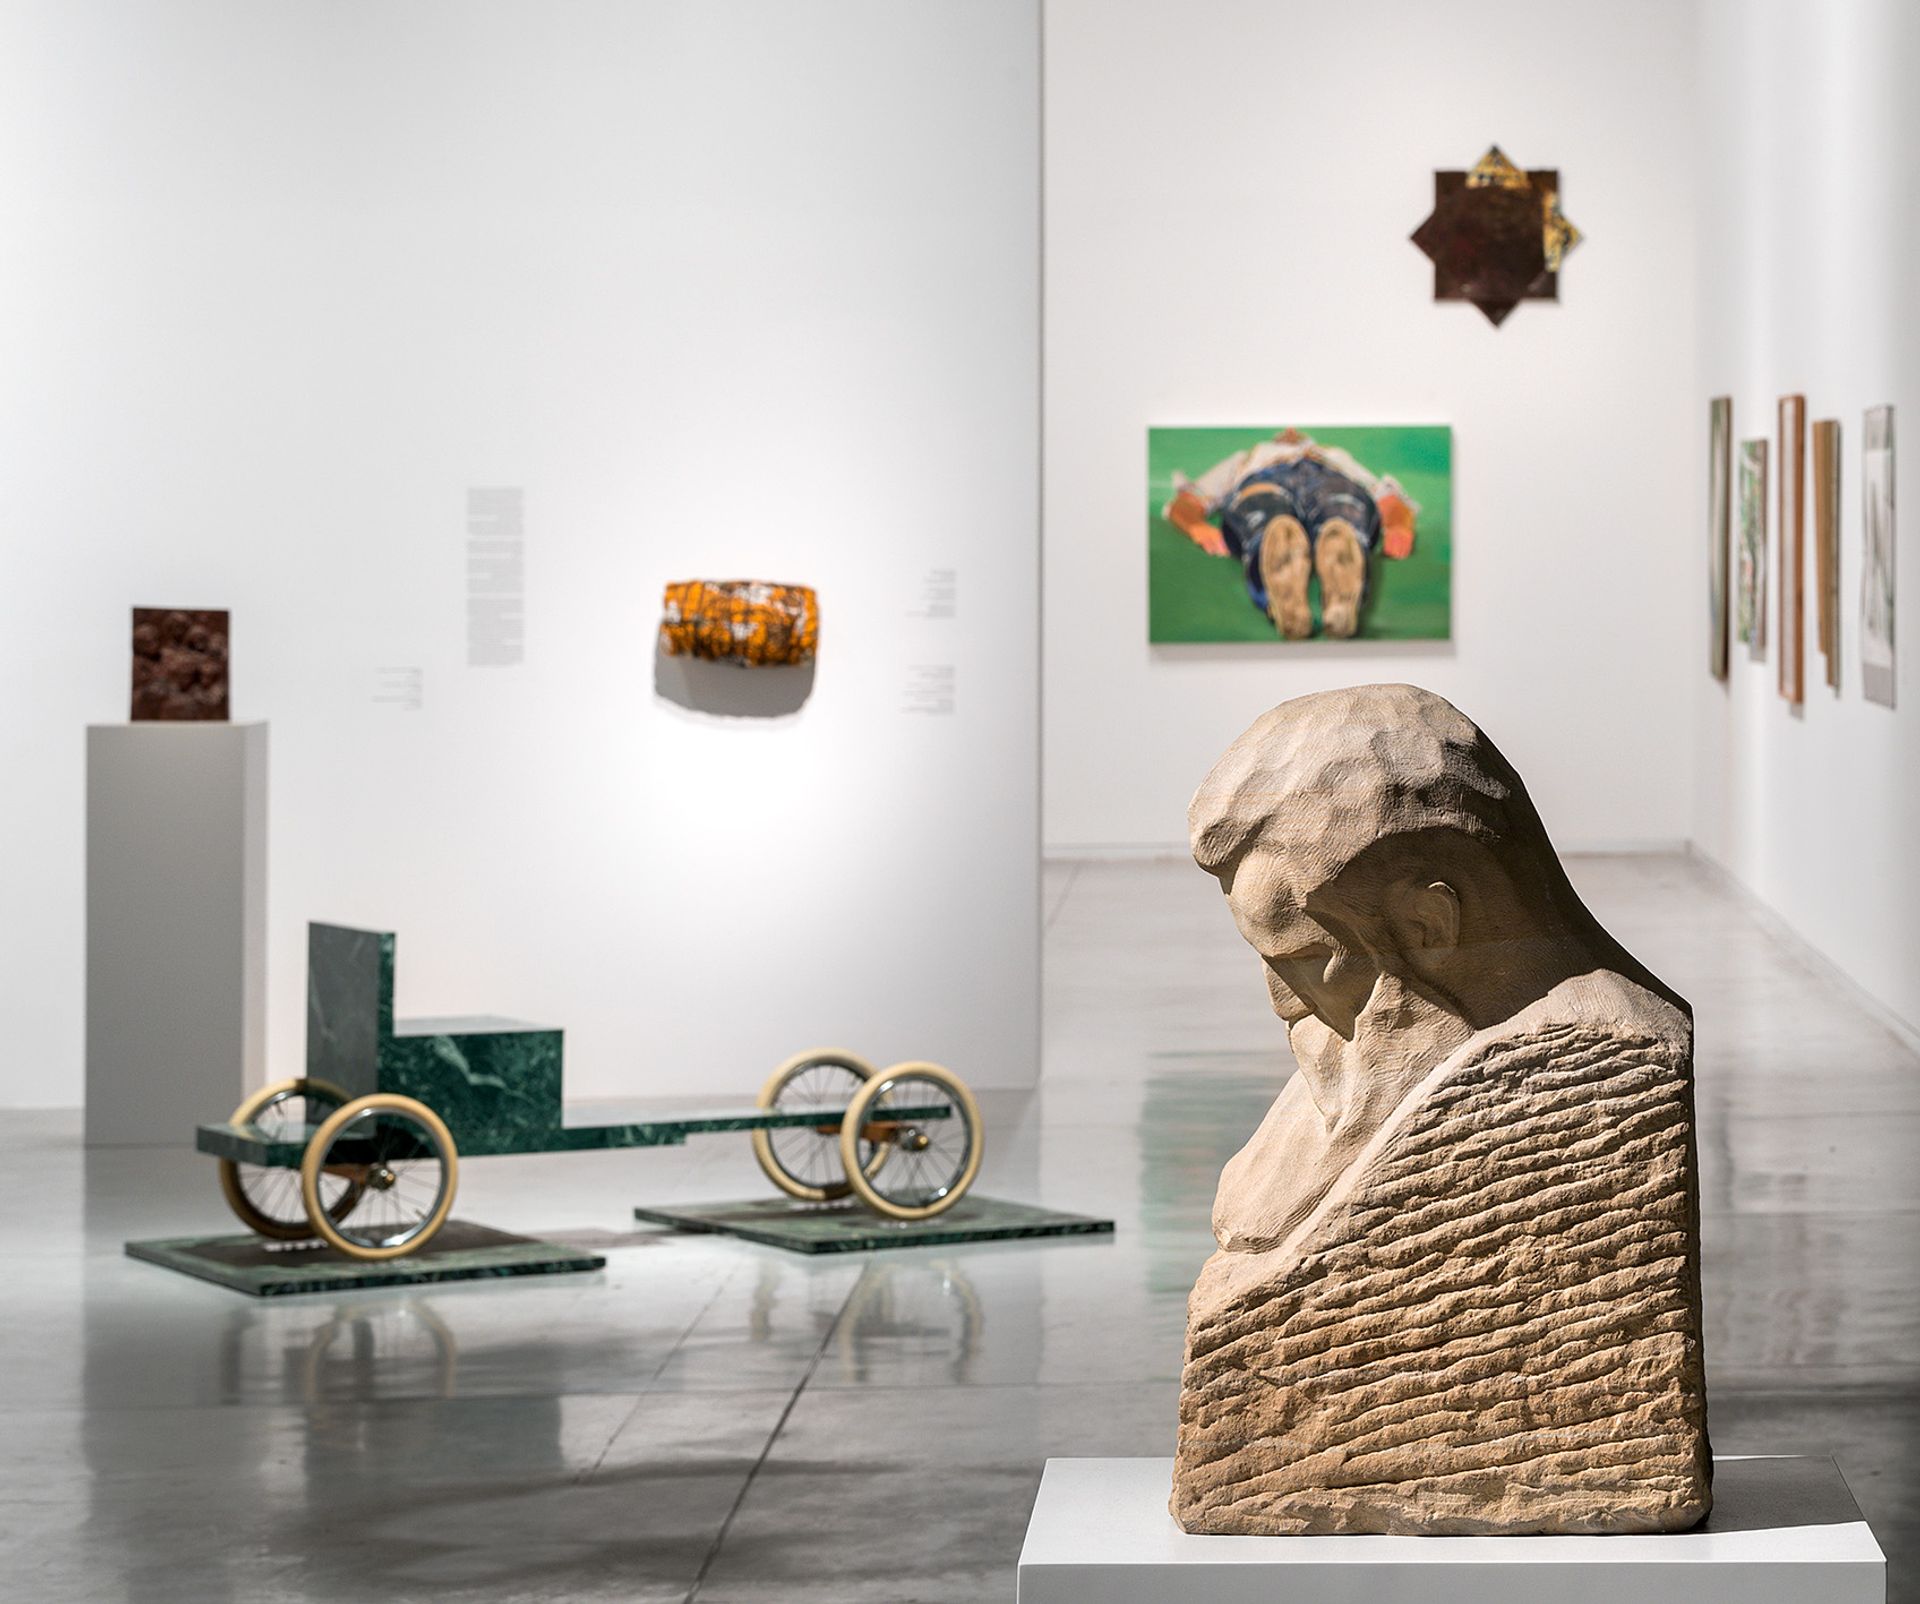 תצוגת הקבע החדשה "דמיון חומרי"

באדיבות: מוזיאון תל אביב לאמנות